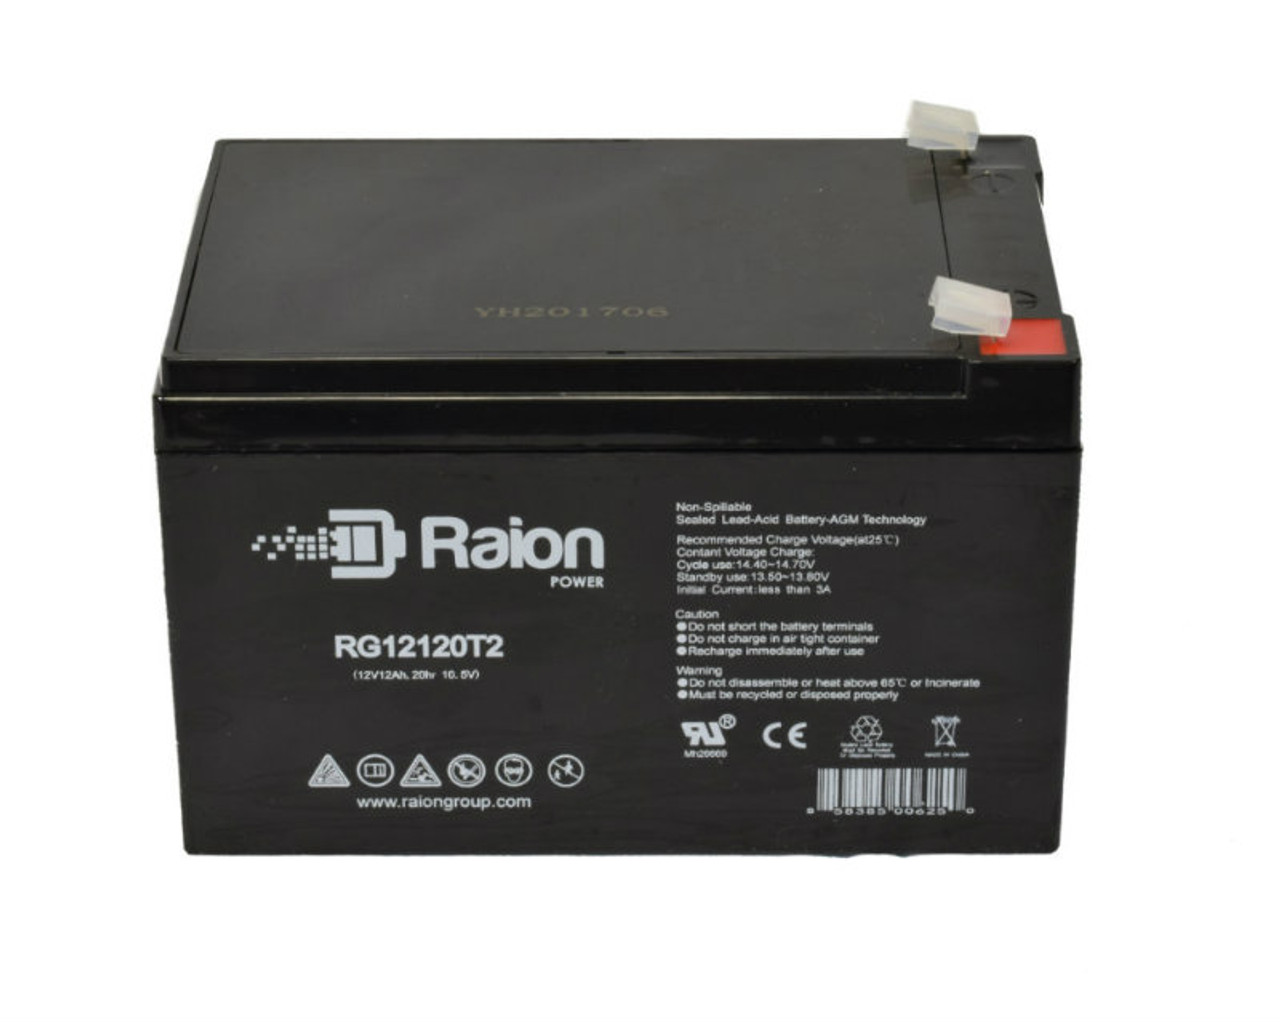 Raion Power RG12120T2 SLA Battery for Tao Motor E3-350